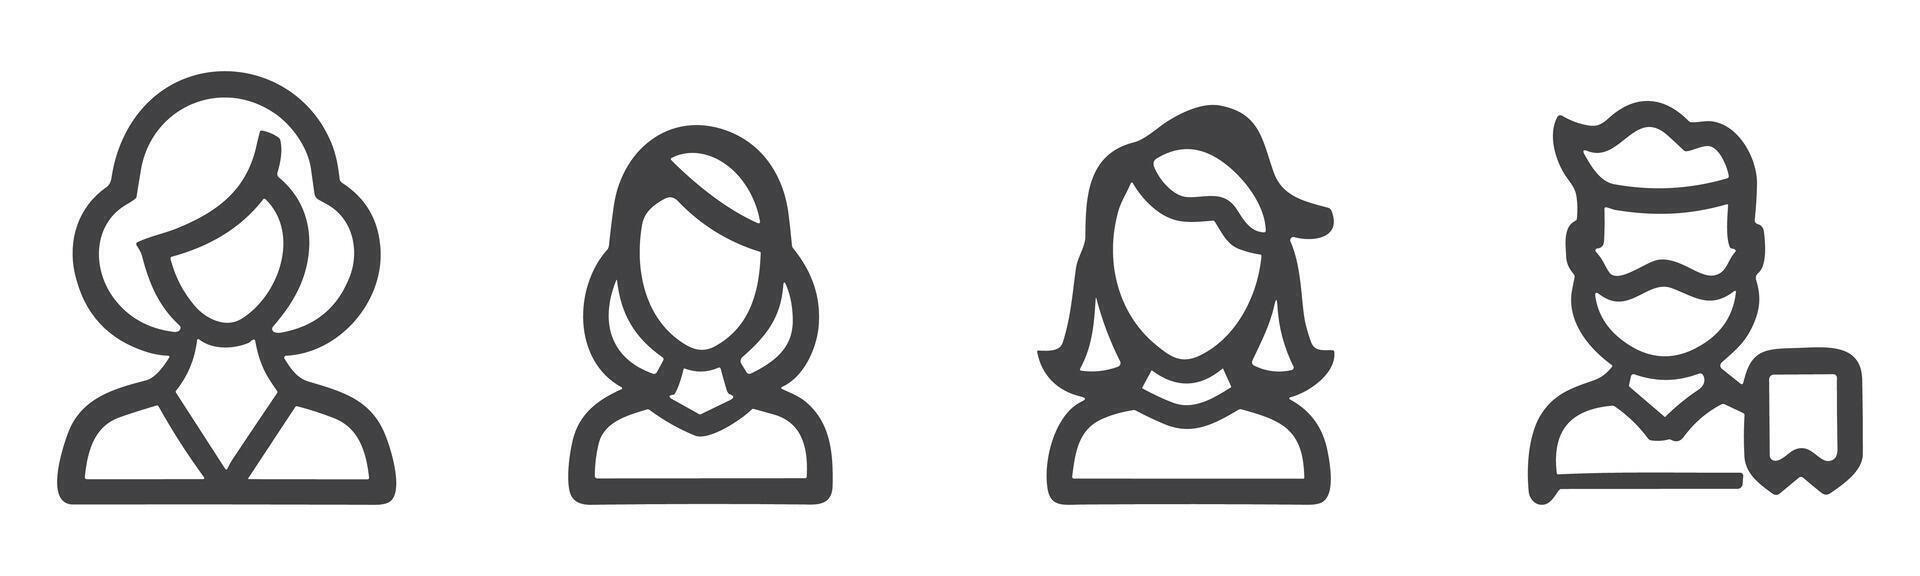 avatar profiel icoon reeks inclusief mannetje en vrouw. vector